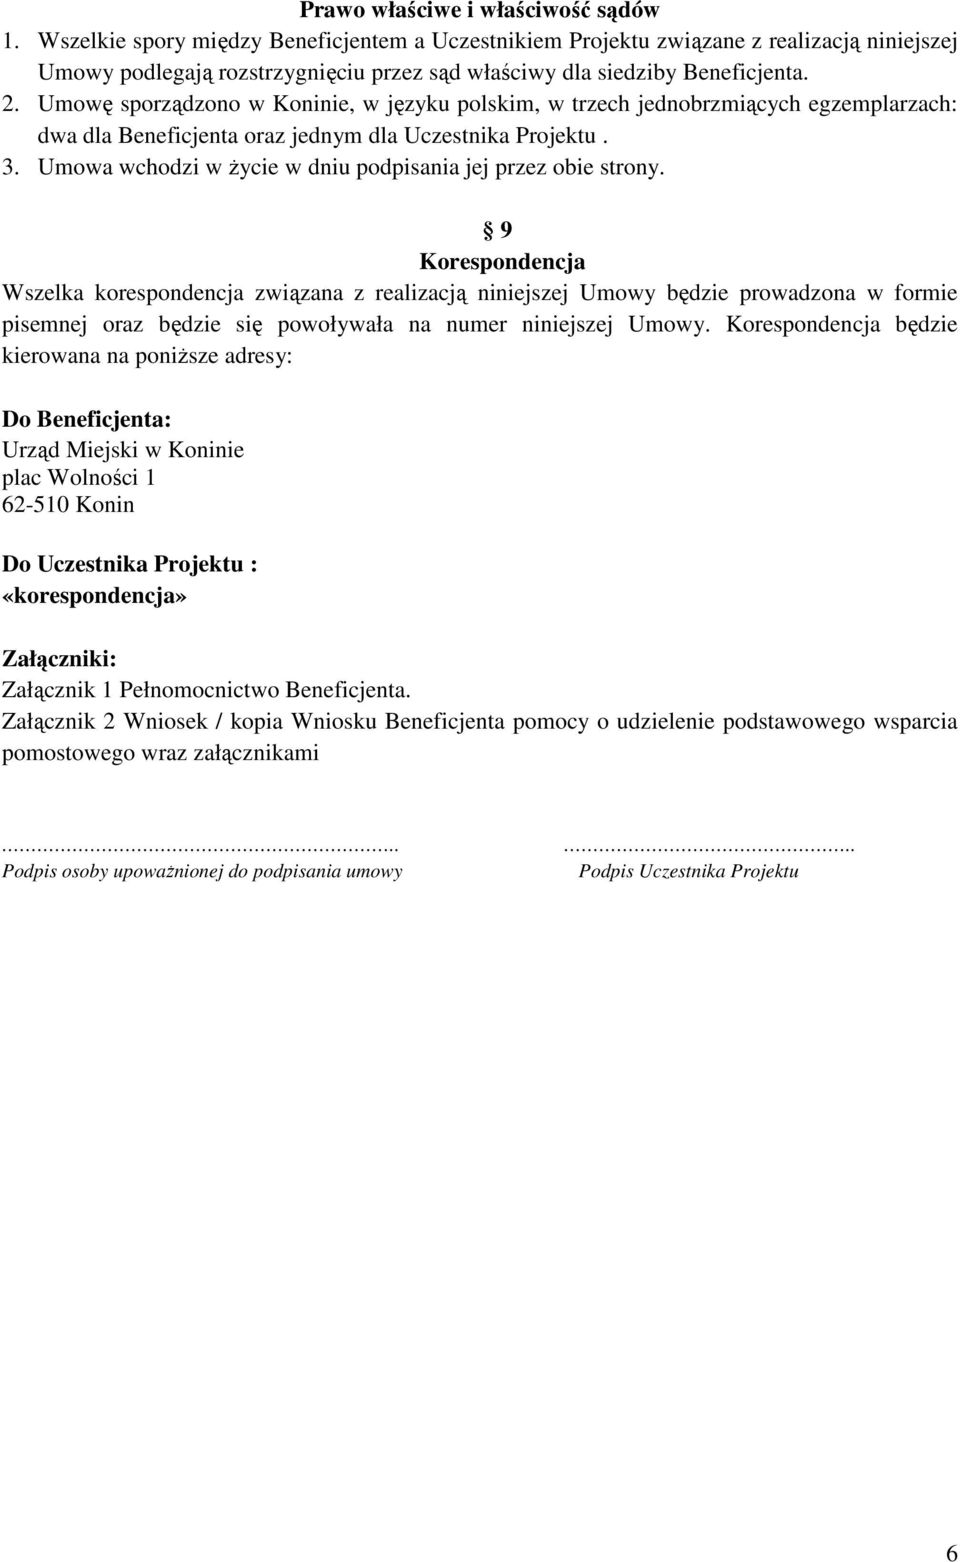 Umowę sporządzono w Koninie, w języku polskim, w trzech jednobrzmiących egzemplarzach: dwa dla Beneficjenta oraz jednym dla Uczestnika Projektu. 3.